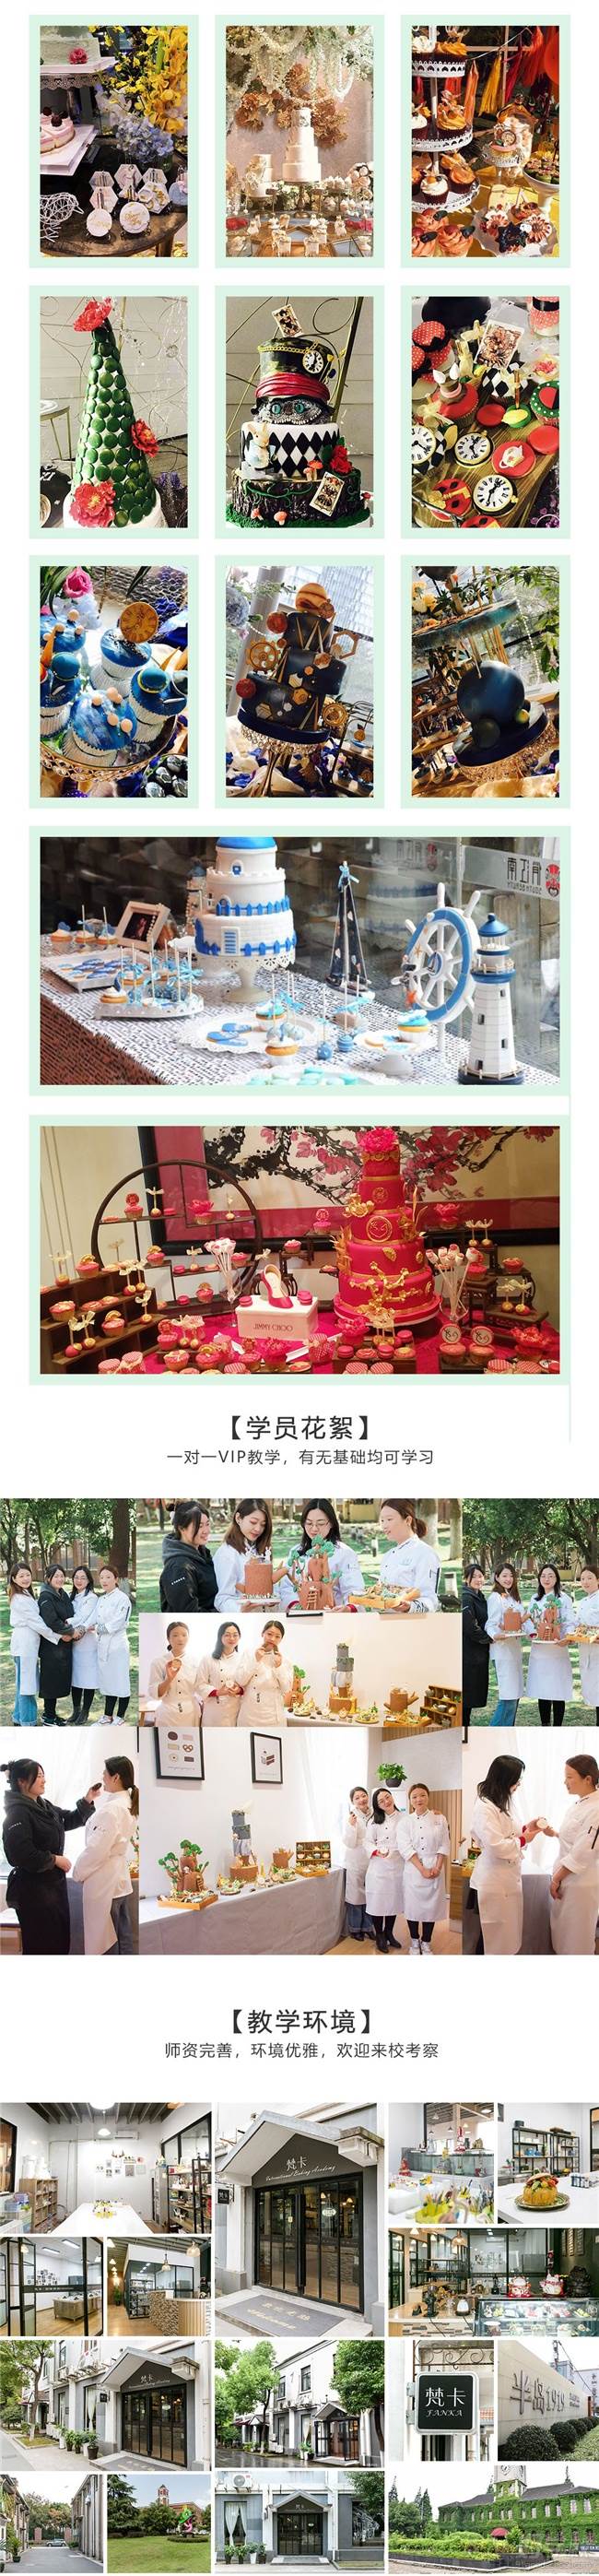 上海梵卡国际烘焙学院 